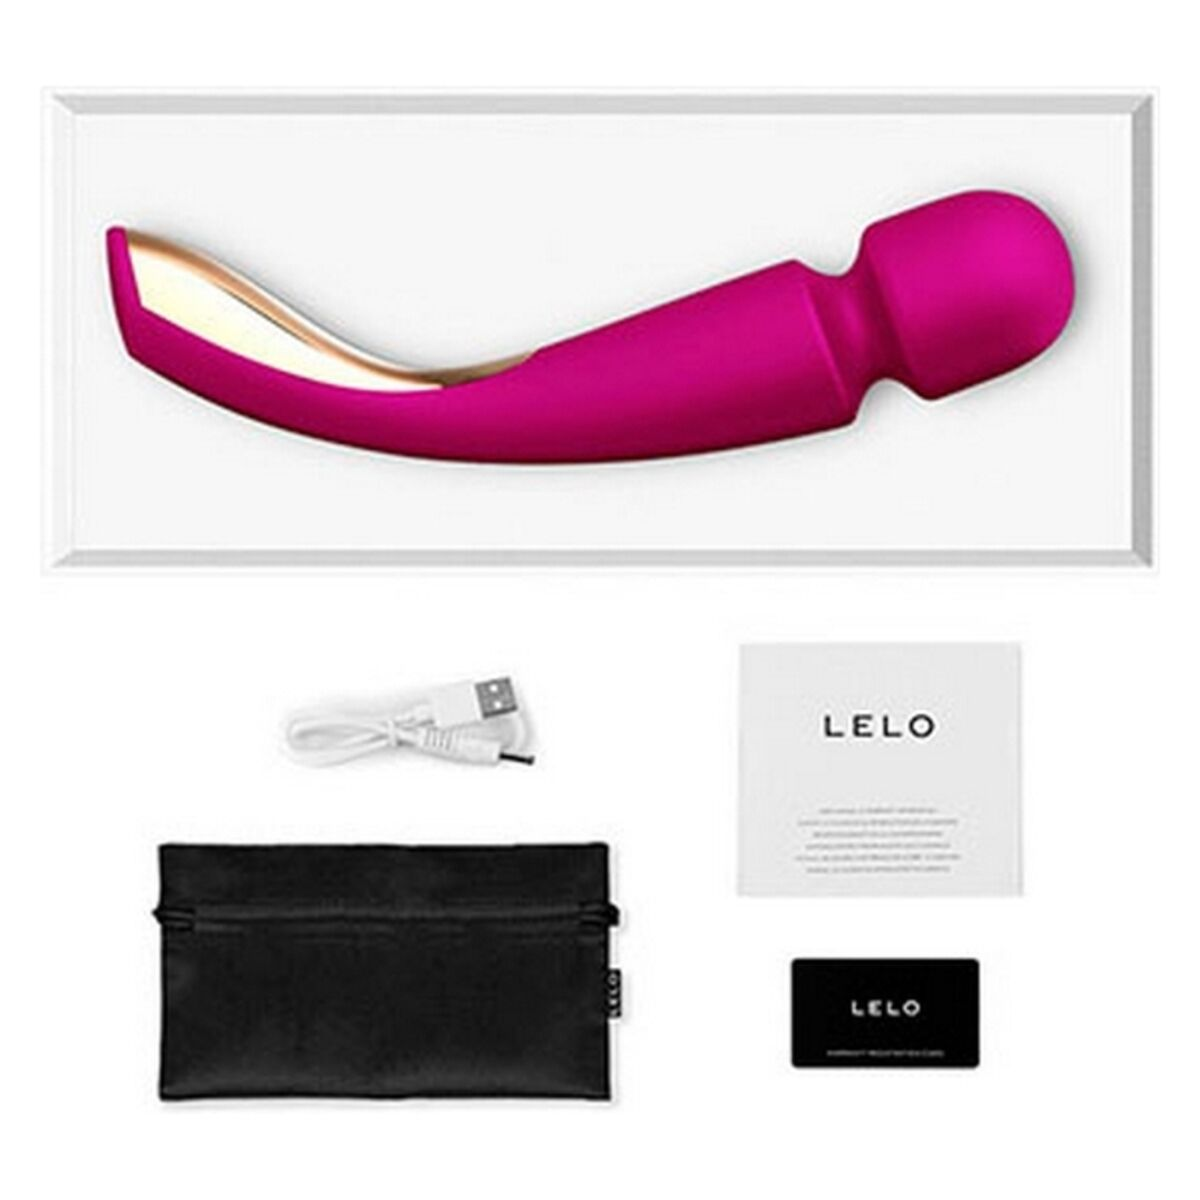 LELO LELO Smart Wand 2 - Groß - Pink wand-massager